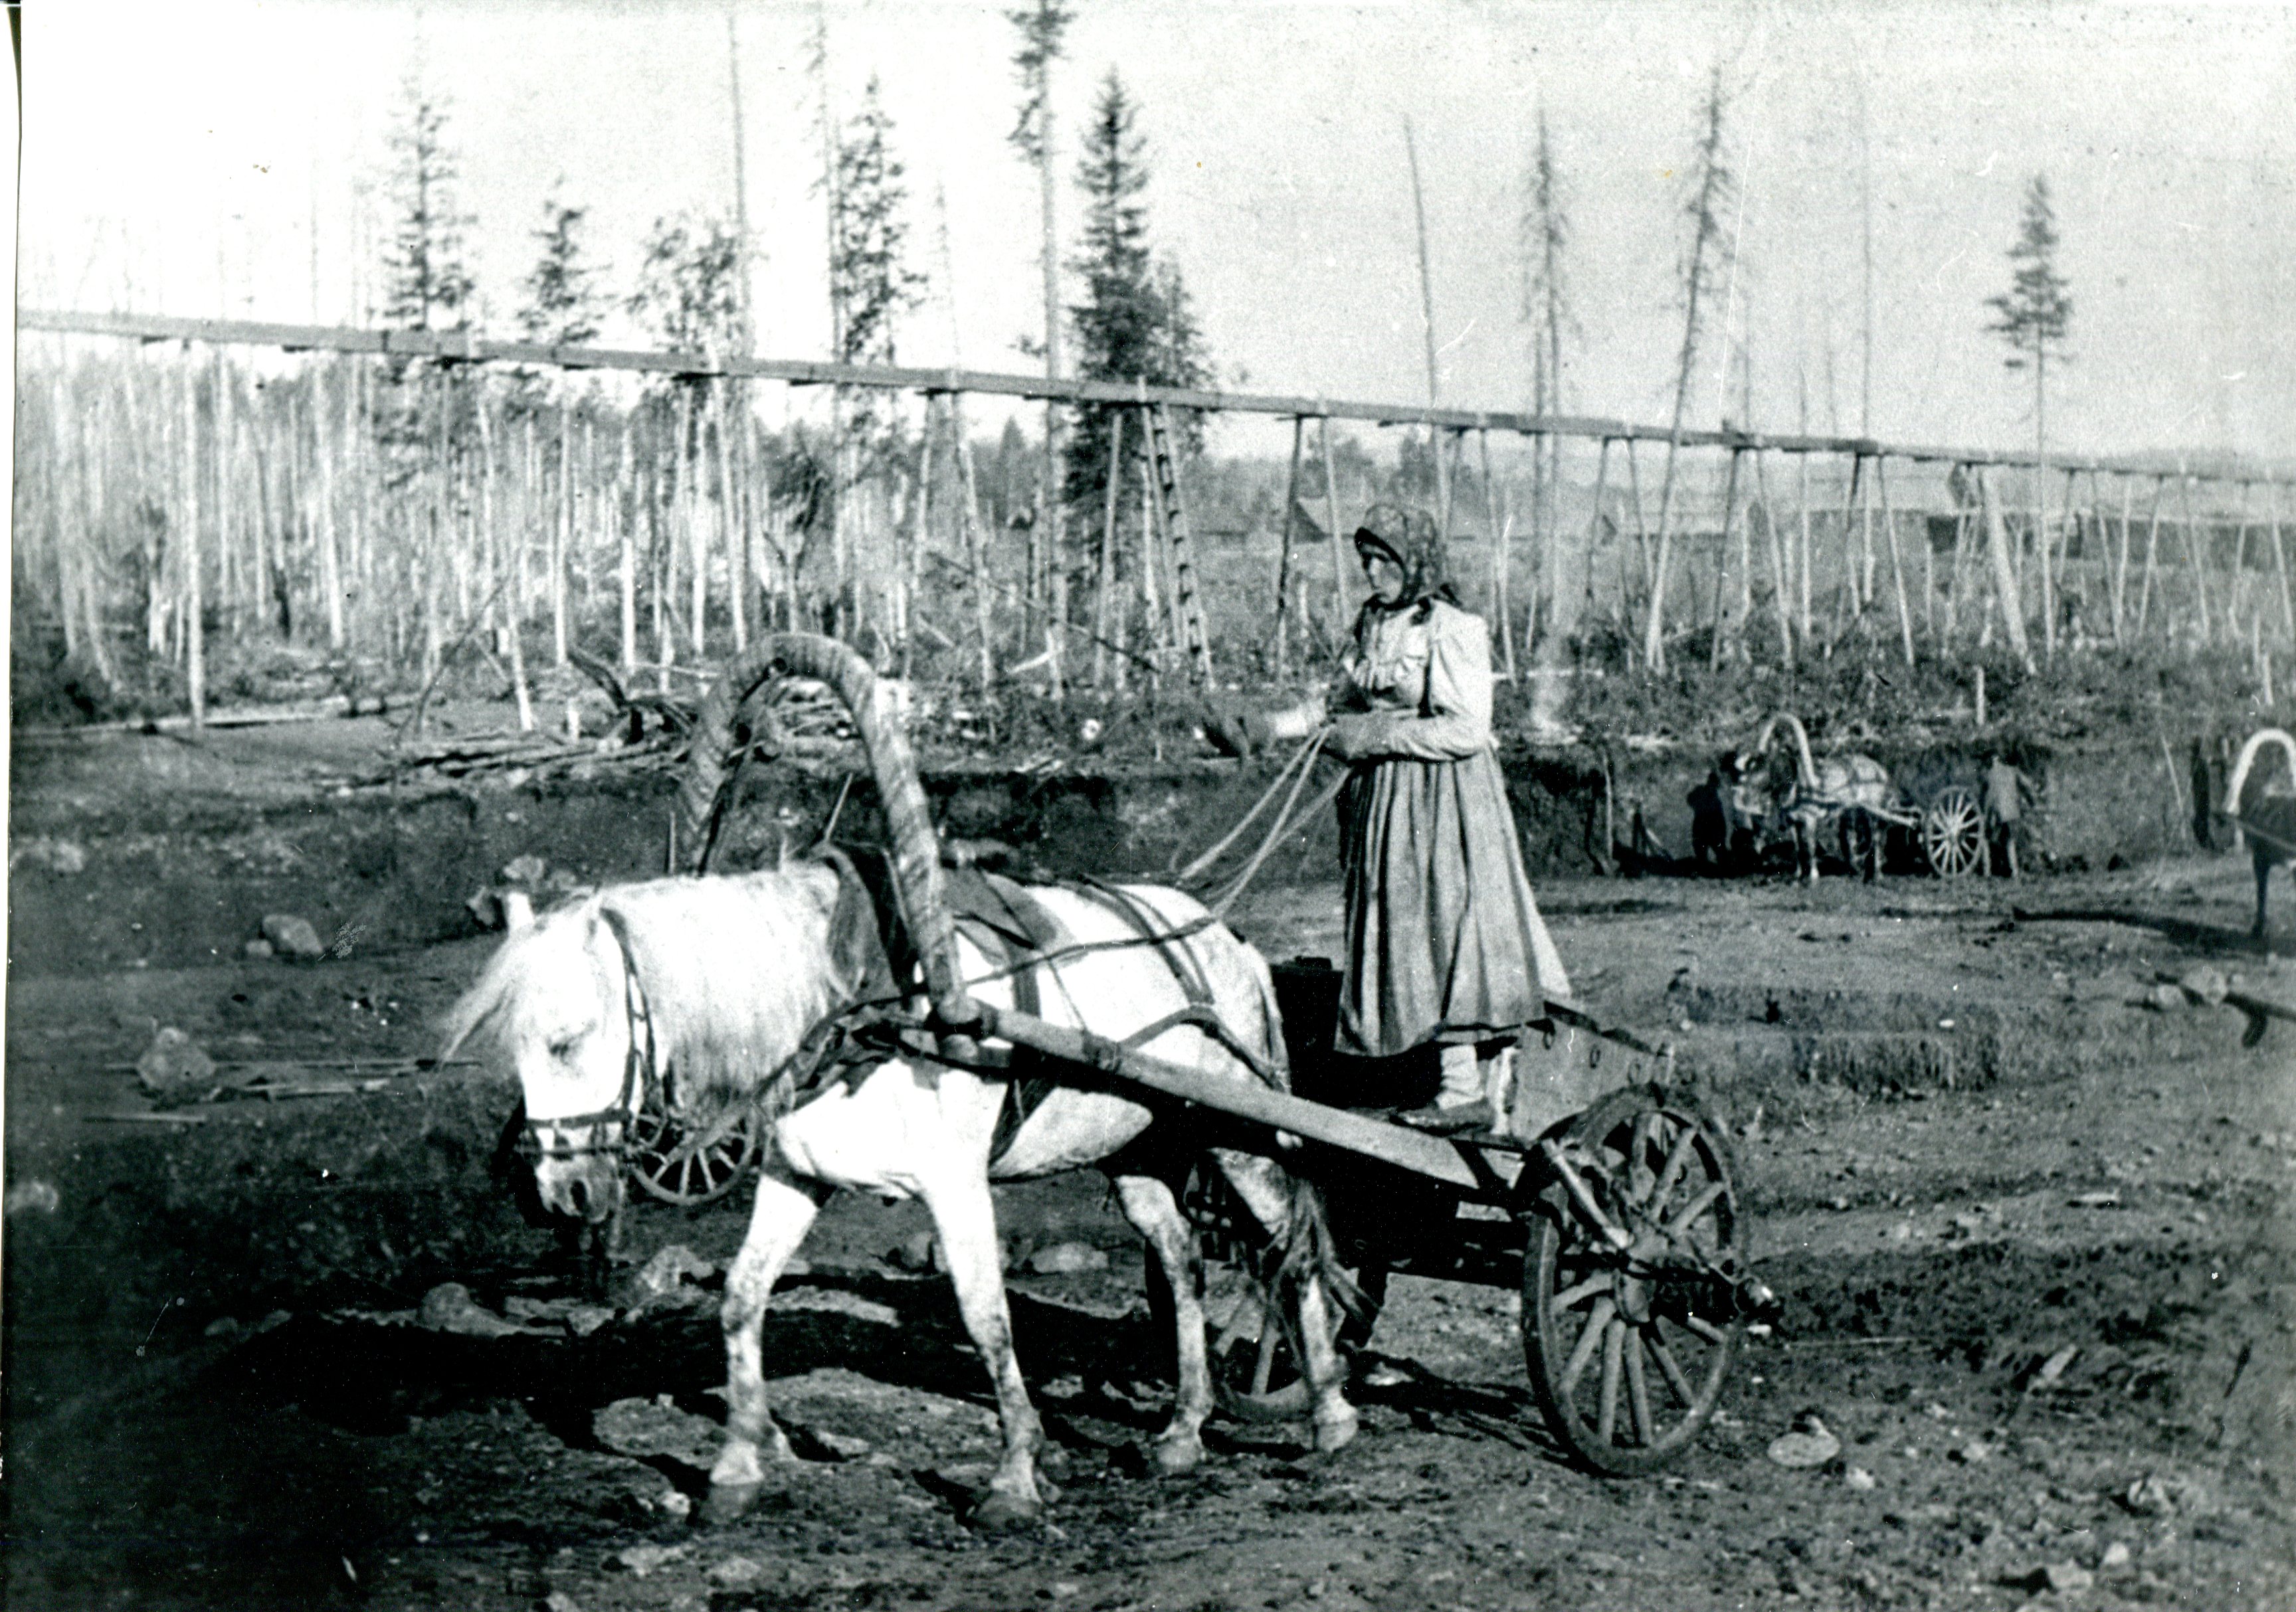 Женщины и дети нередко работали на прииске гонщиками, то есть занимались подвозом песка на промывку. Фото конца XIX в.